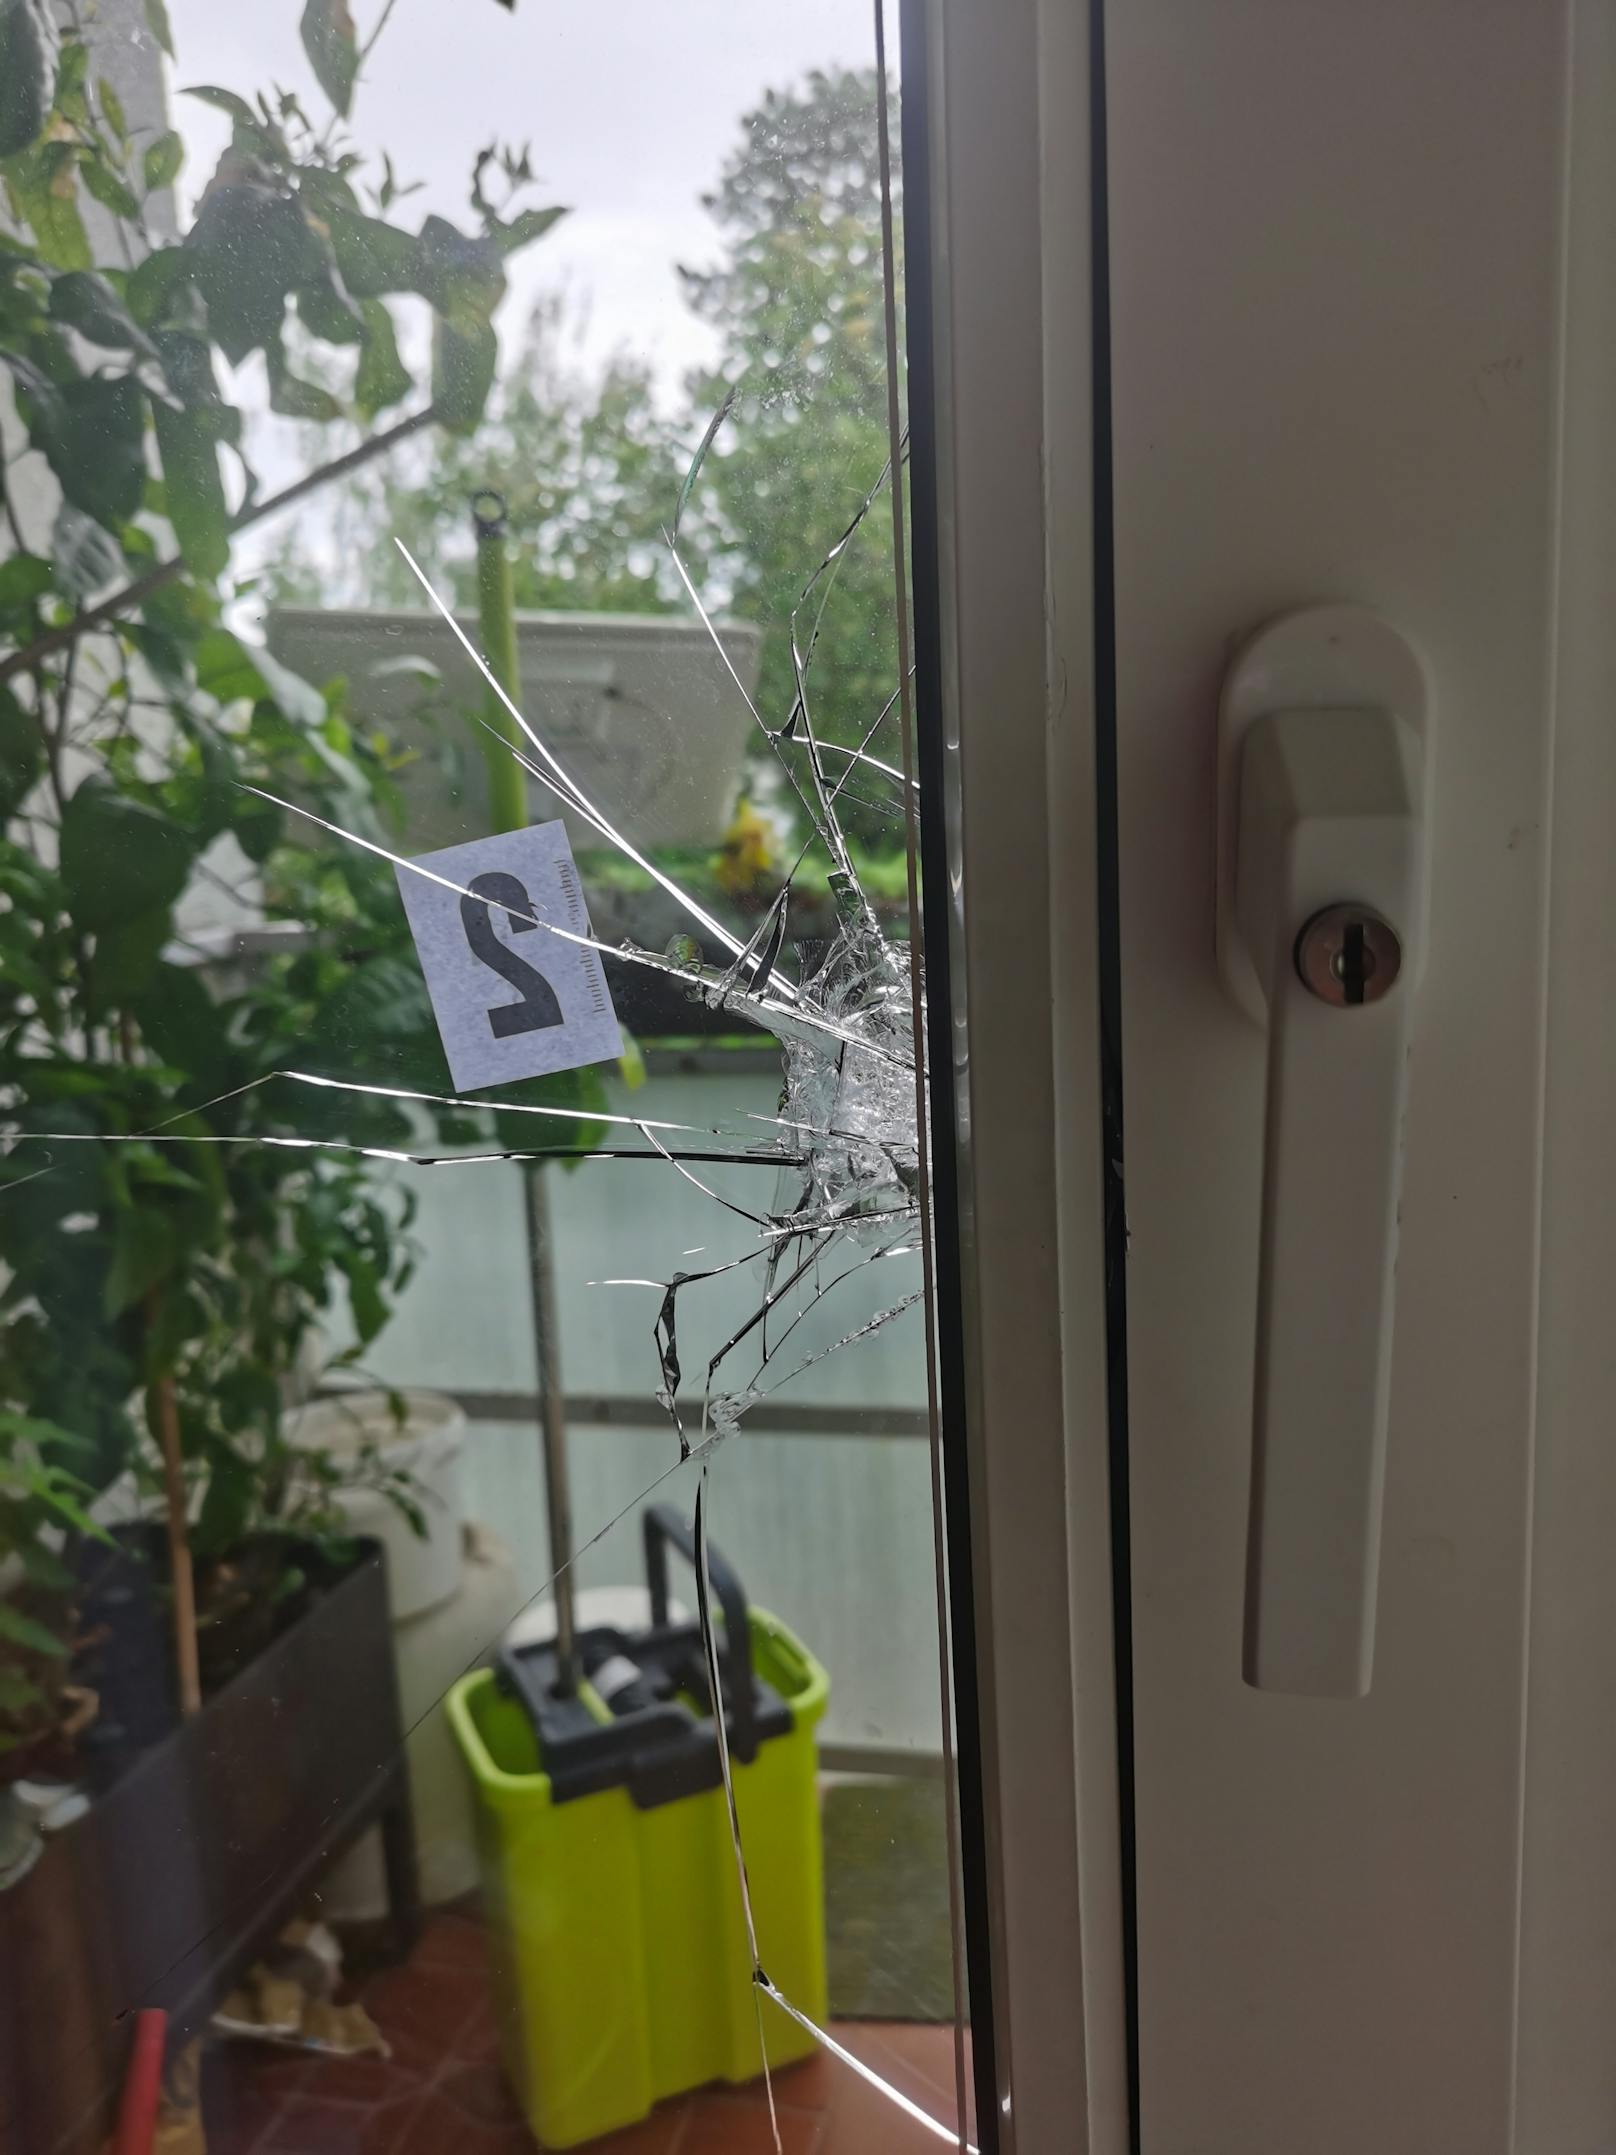 Der Einbrecher (20) versuchte, über die balkontür bei der Familie W. in Wien-Hietzing einzusteigen. Schaden: 900 Euro.